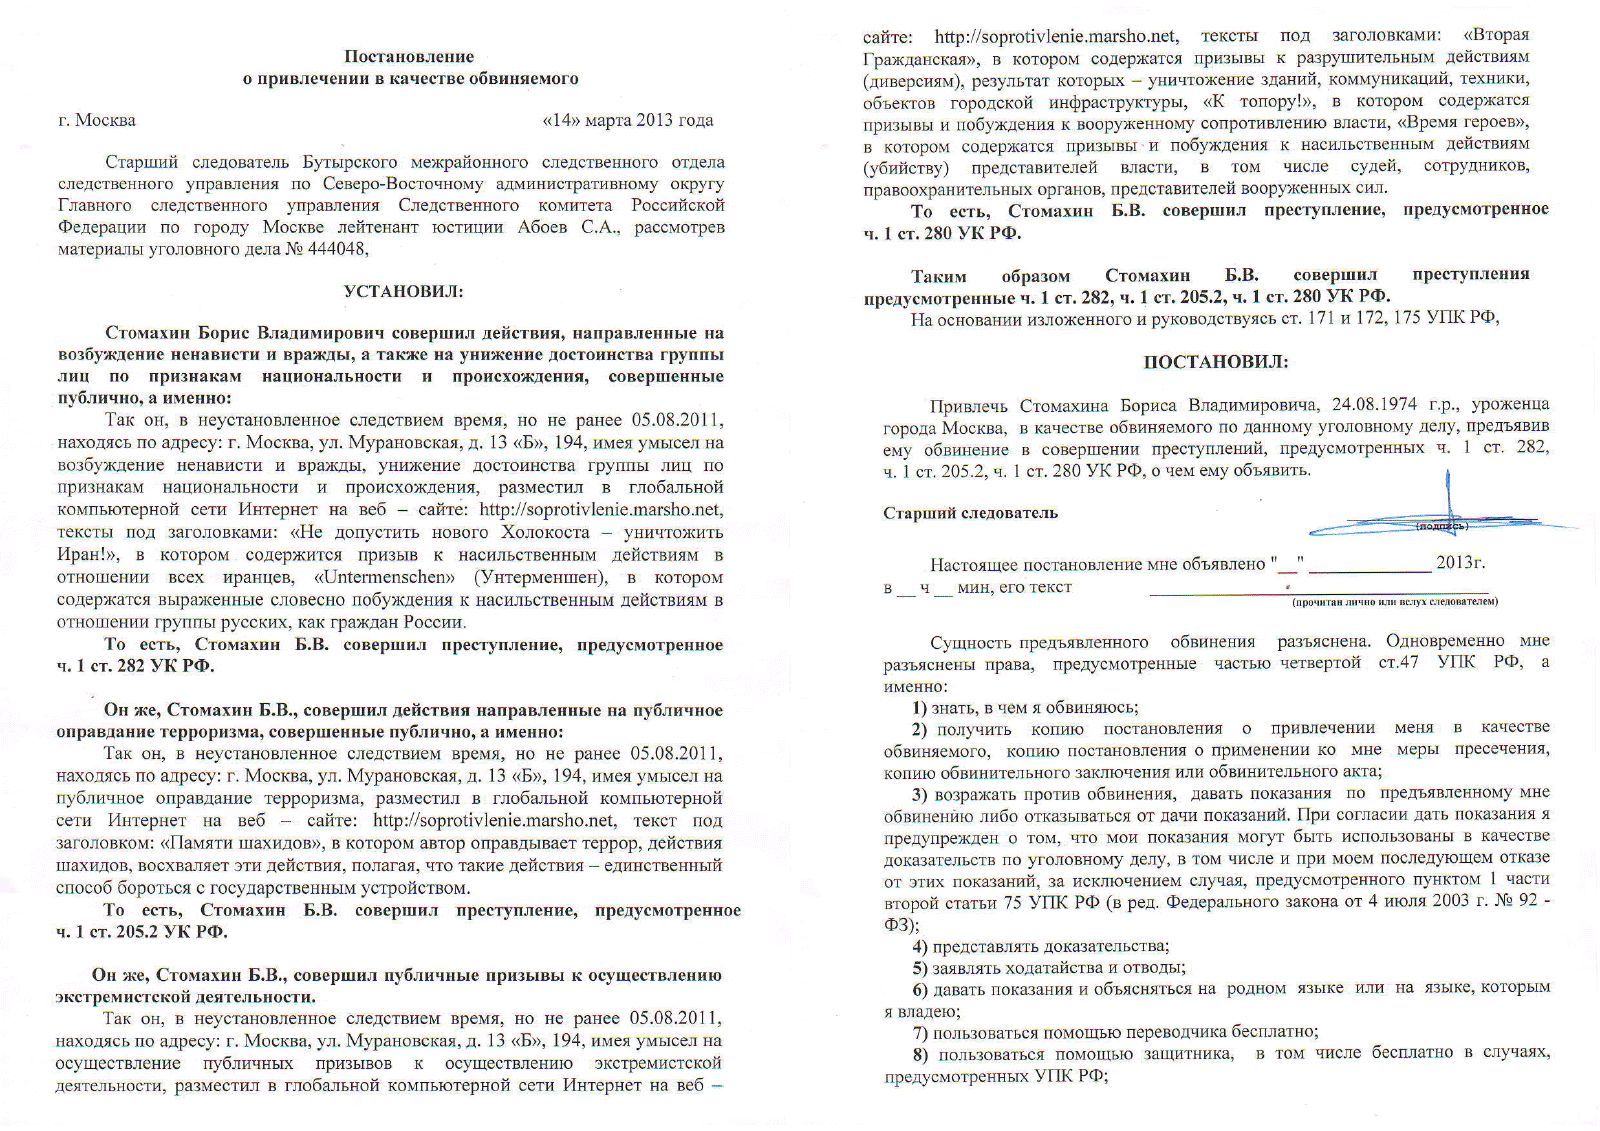 Постановление о предъявлении обвинения Б. Стомахину. Страницы 1-2